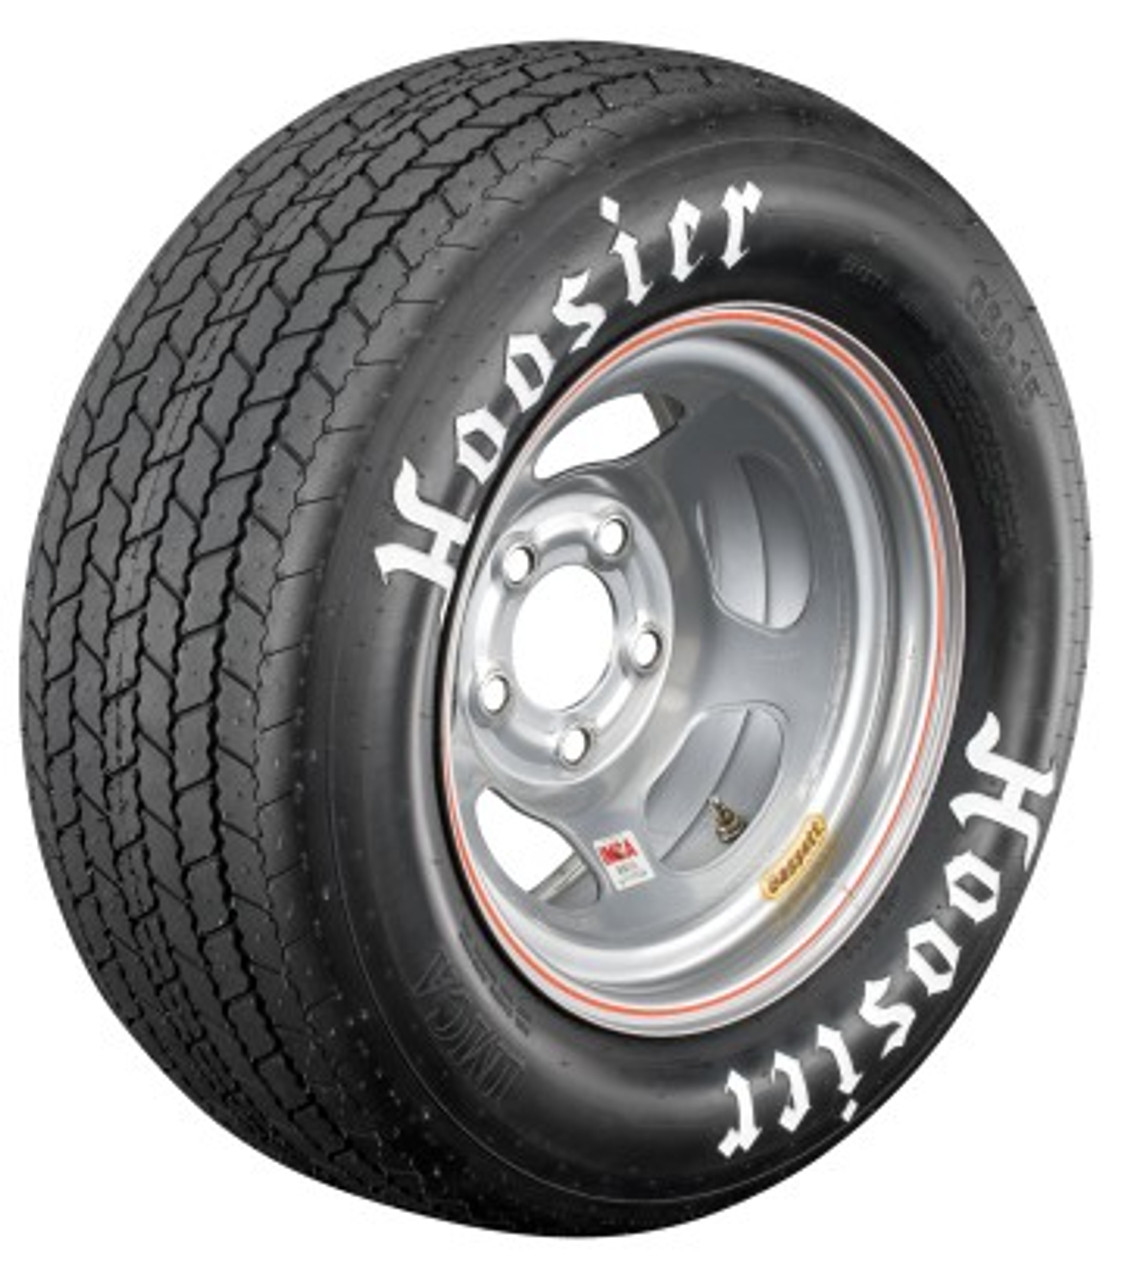 Hoosier IMCA Modified / Stock Car Dirt Tire